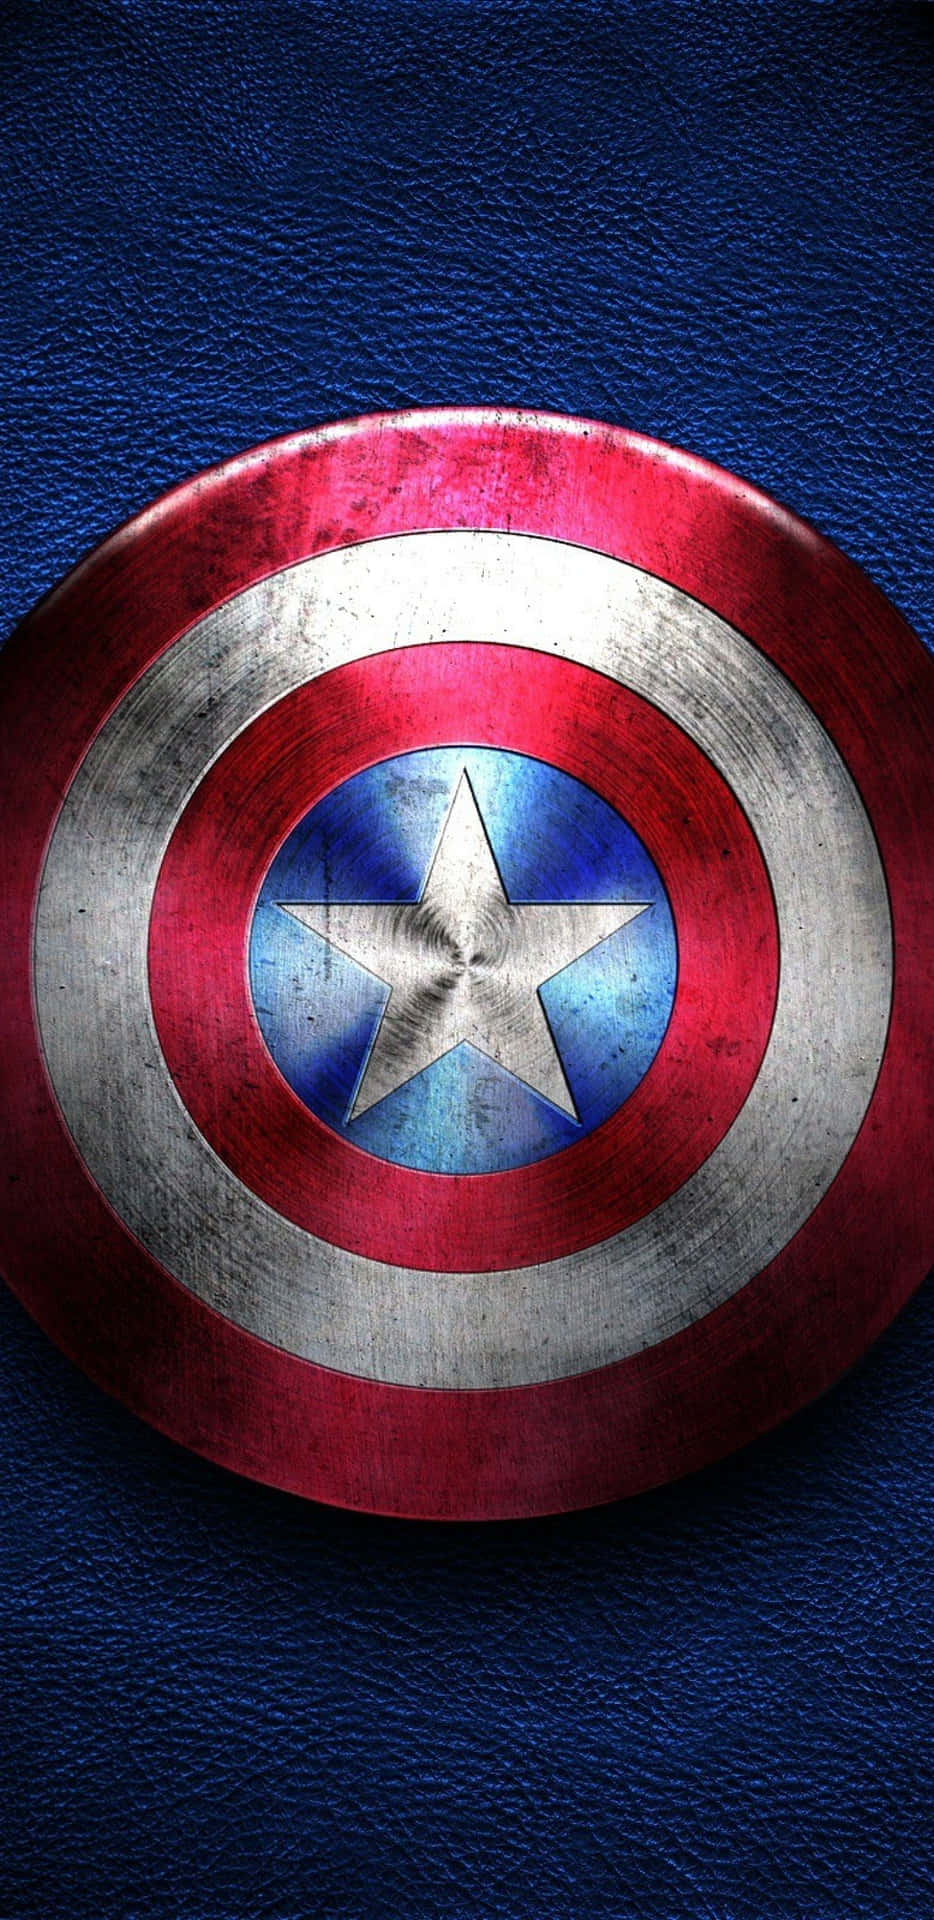 Pixel3xl Bakgrundsbild Med Captain America-skölden